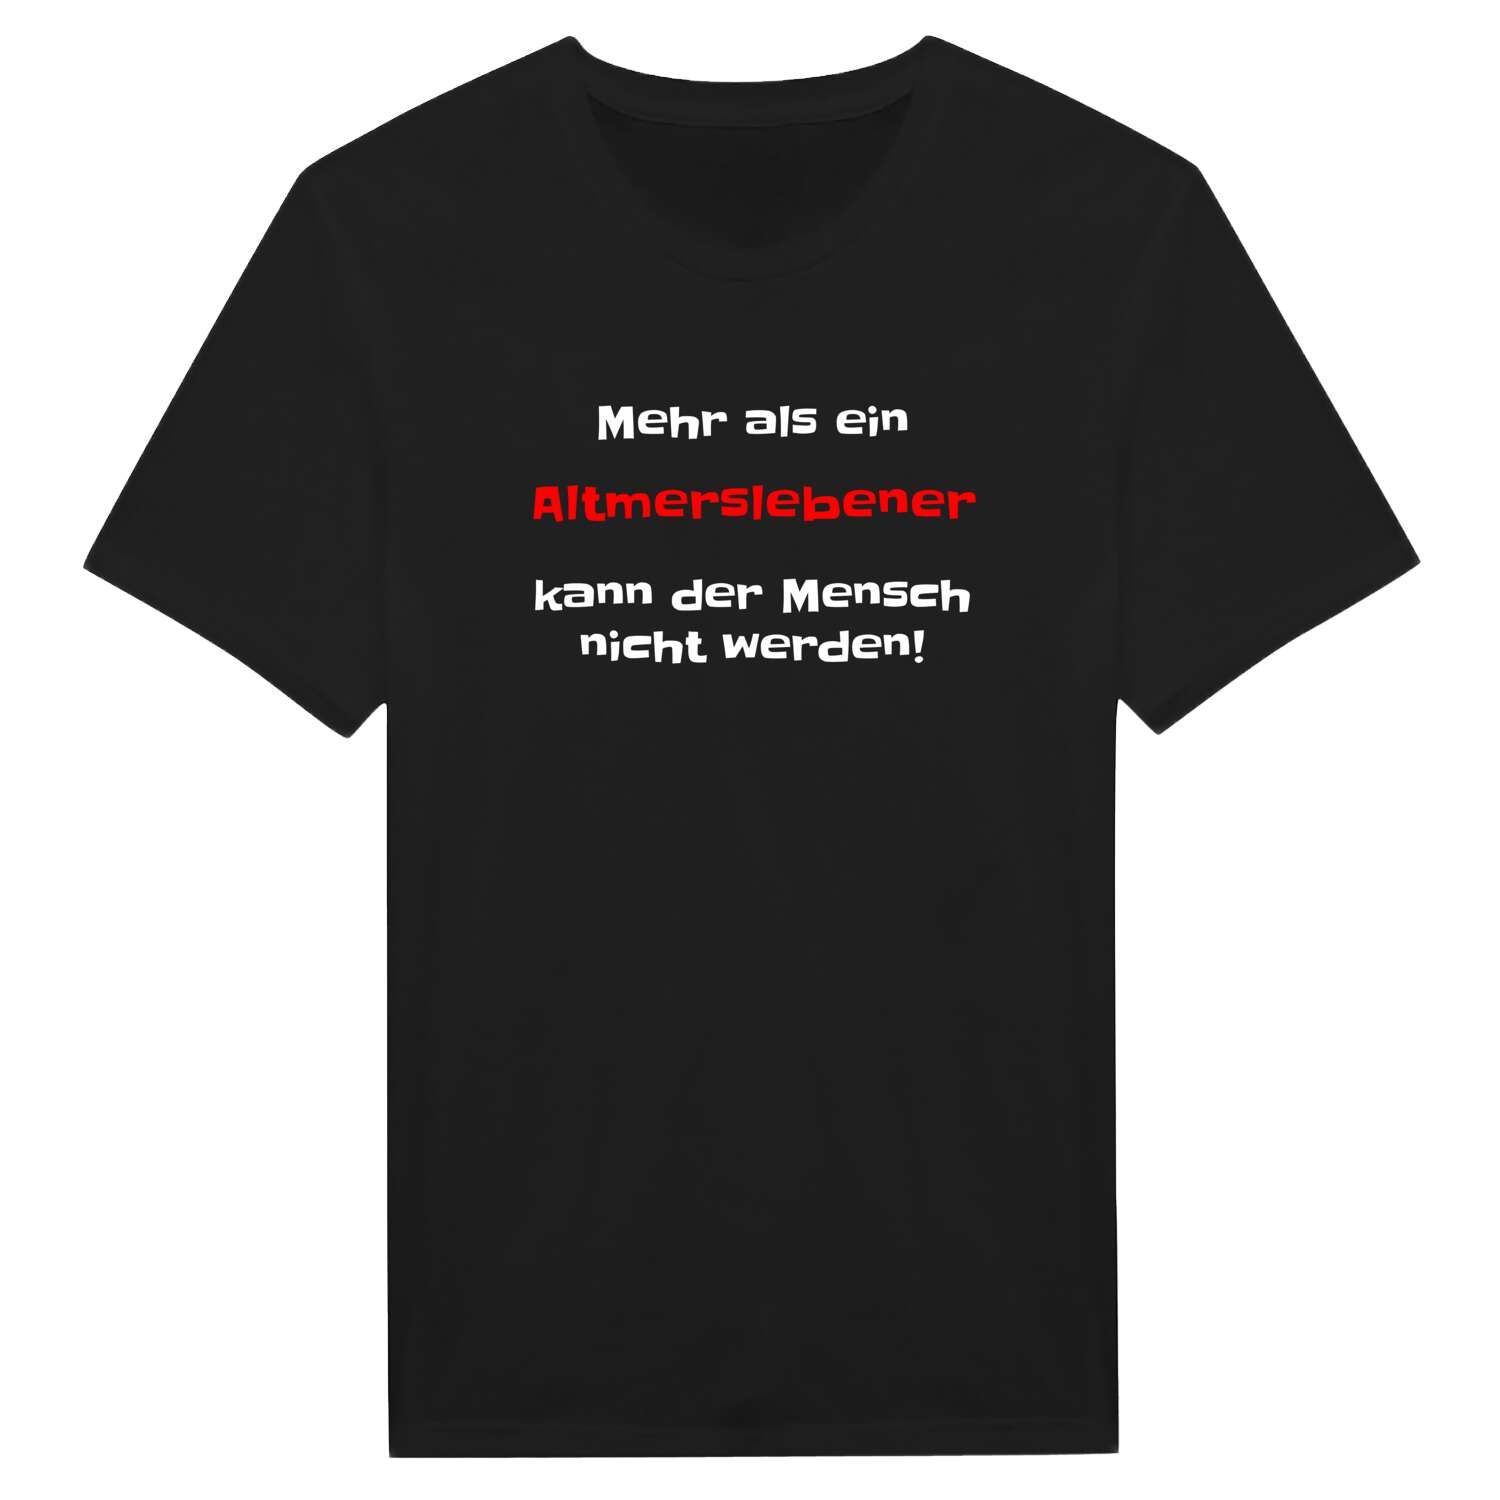 Altmersleben T-Shirt »Mehr als ein«